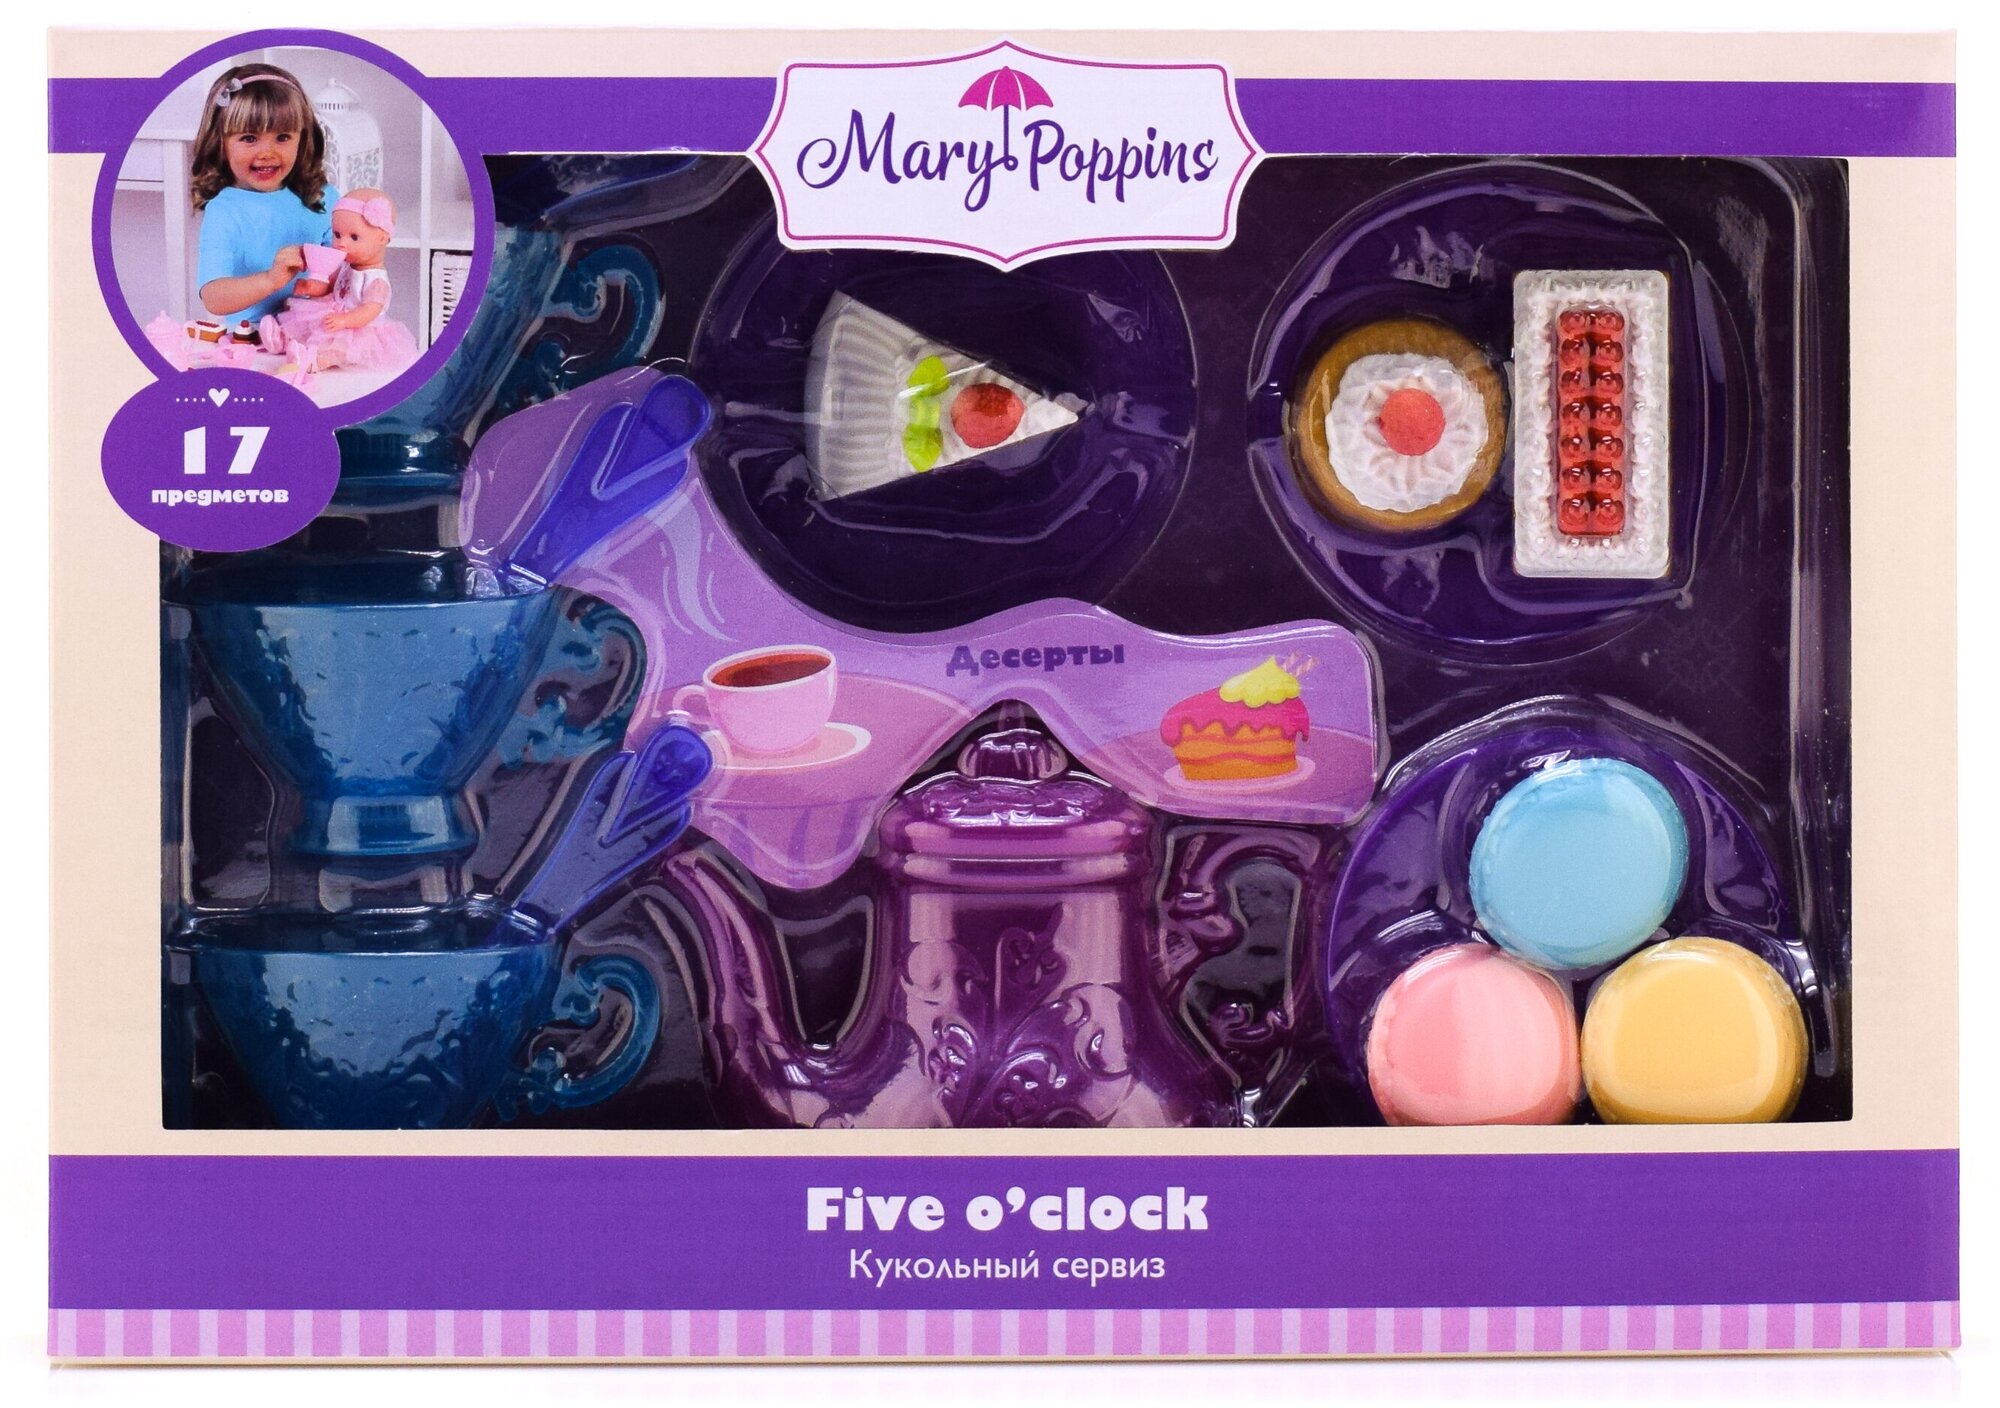 Посудка для куклы, чайный сервиз Mary Poppins Five o'clock